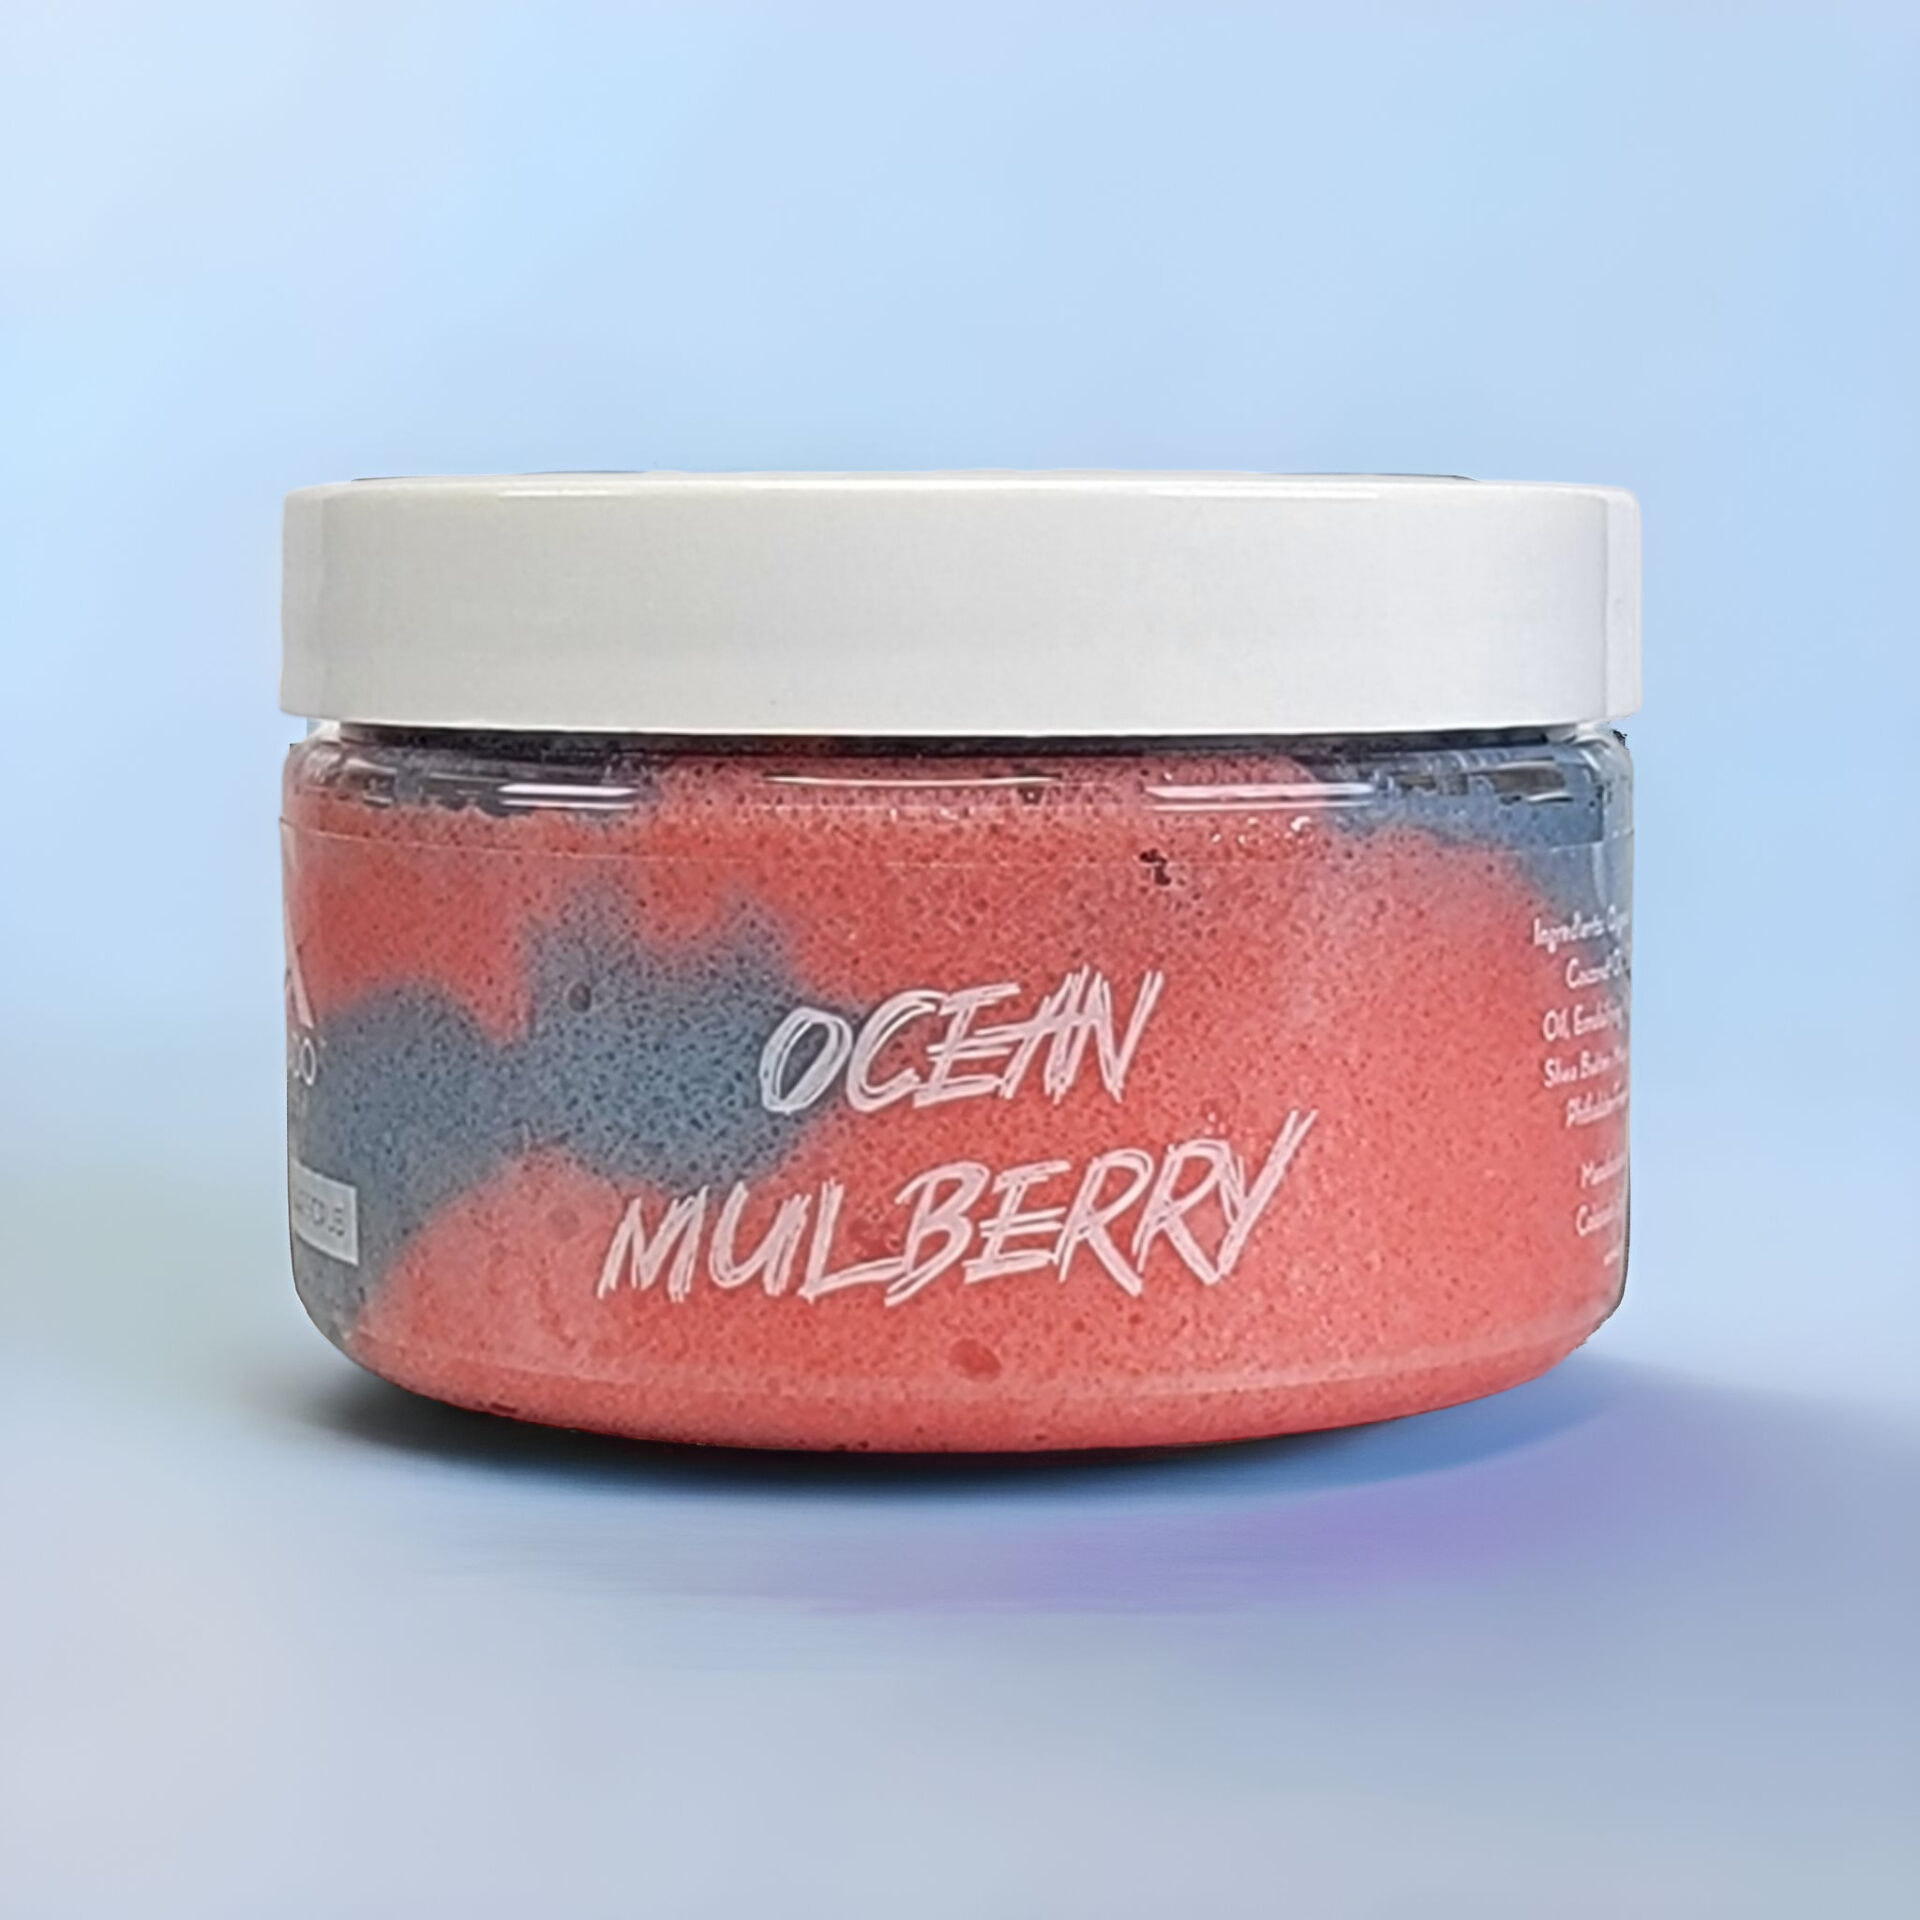 Ocean Mulberry Sugar Scrub